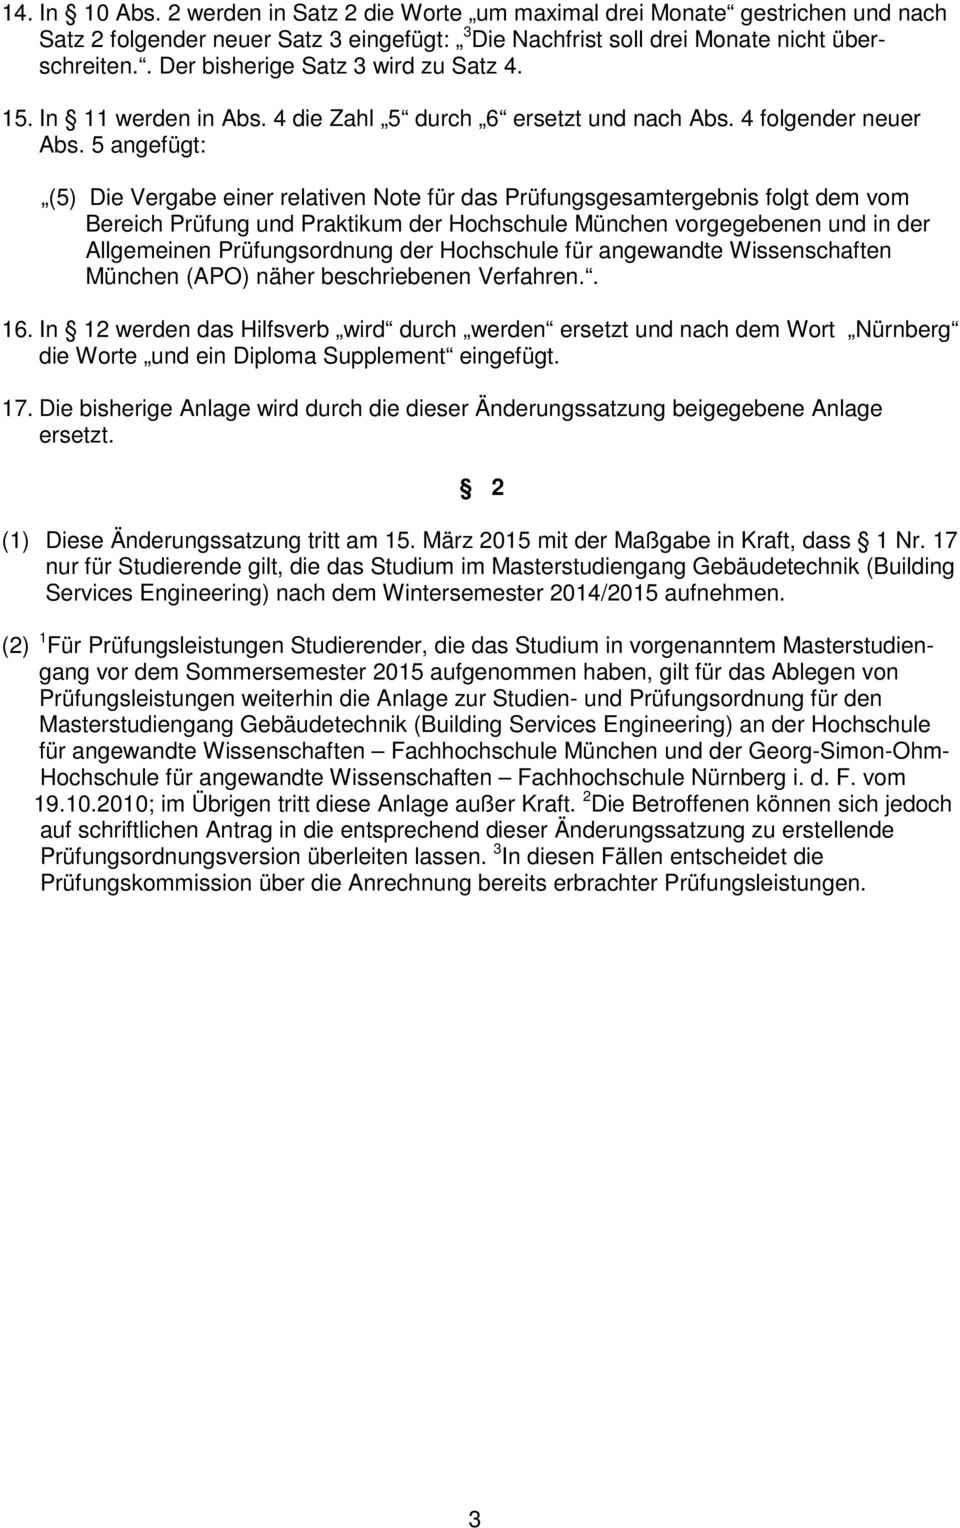 5 angefügt: (5) Die Vergabe einer relativen Note für das Prüfungsgesamtergebnis folgt dem vom Bereich Prüfung und Praktikum der Hochschule München vorgegebenen und in der Allgemeinen Prüfungsordnung